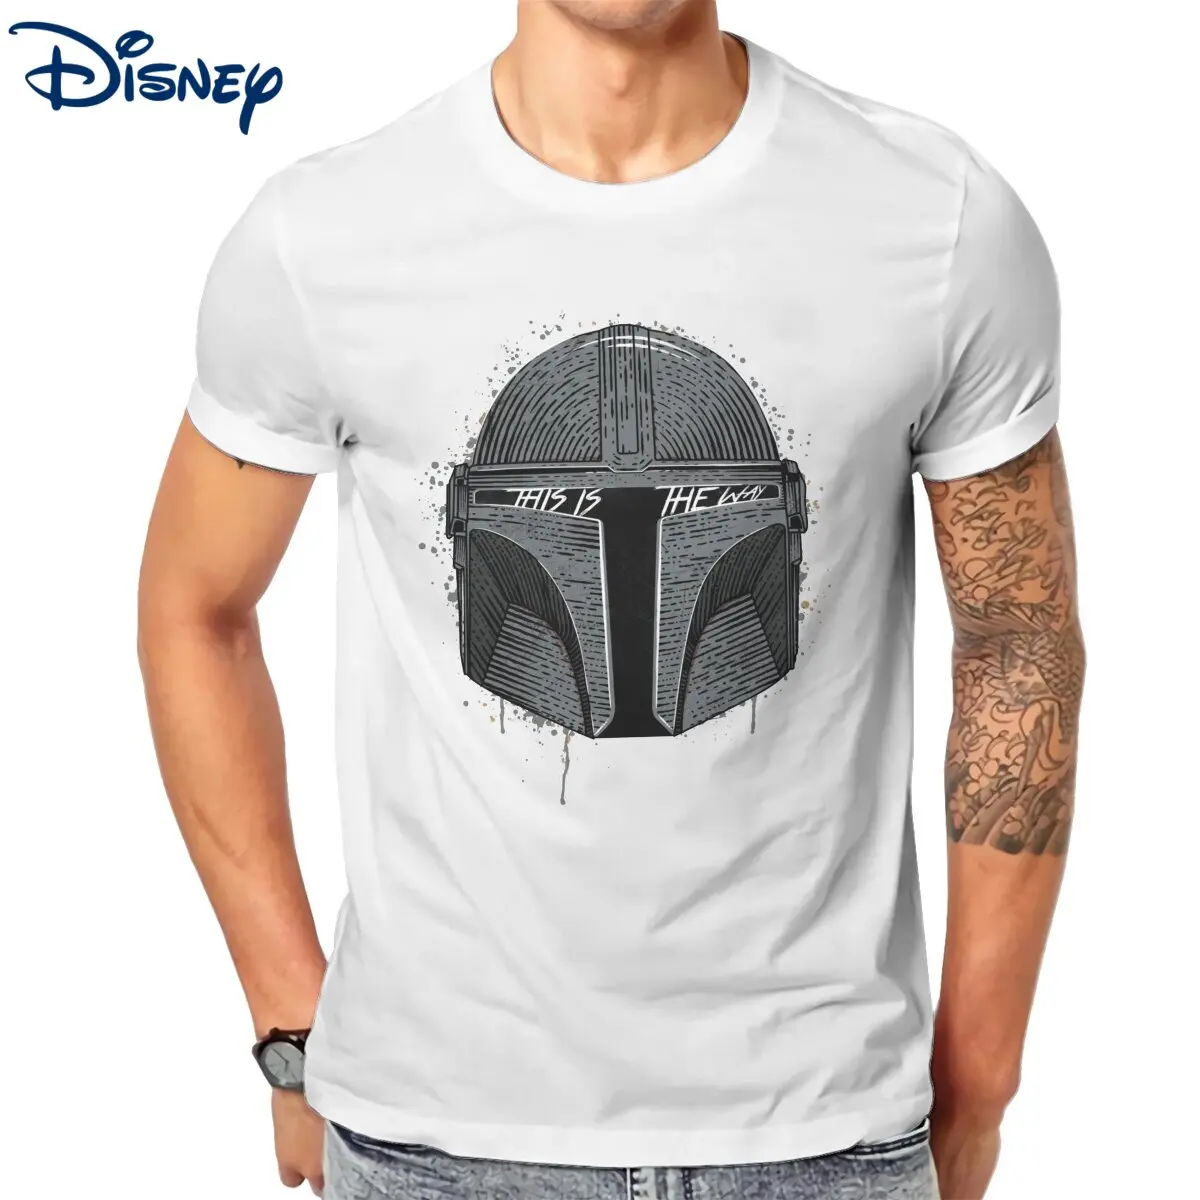 

Мужская футболка Disney This The Way, Винтажная футболка из чистого хлопка, футболка Мандалорских Звездных войн, футболки с круглым вырезом, одежда размера плюс